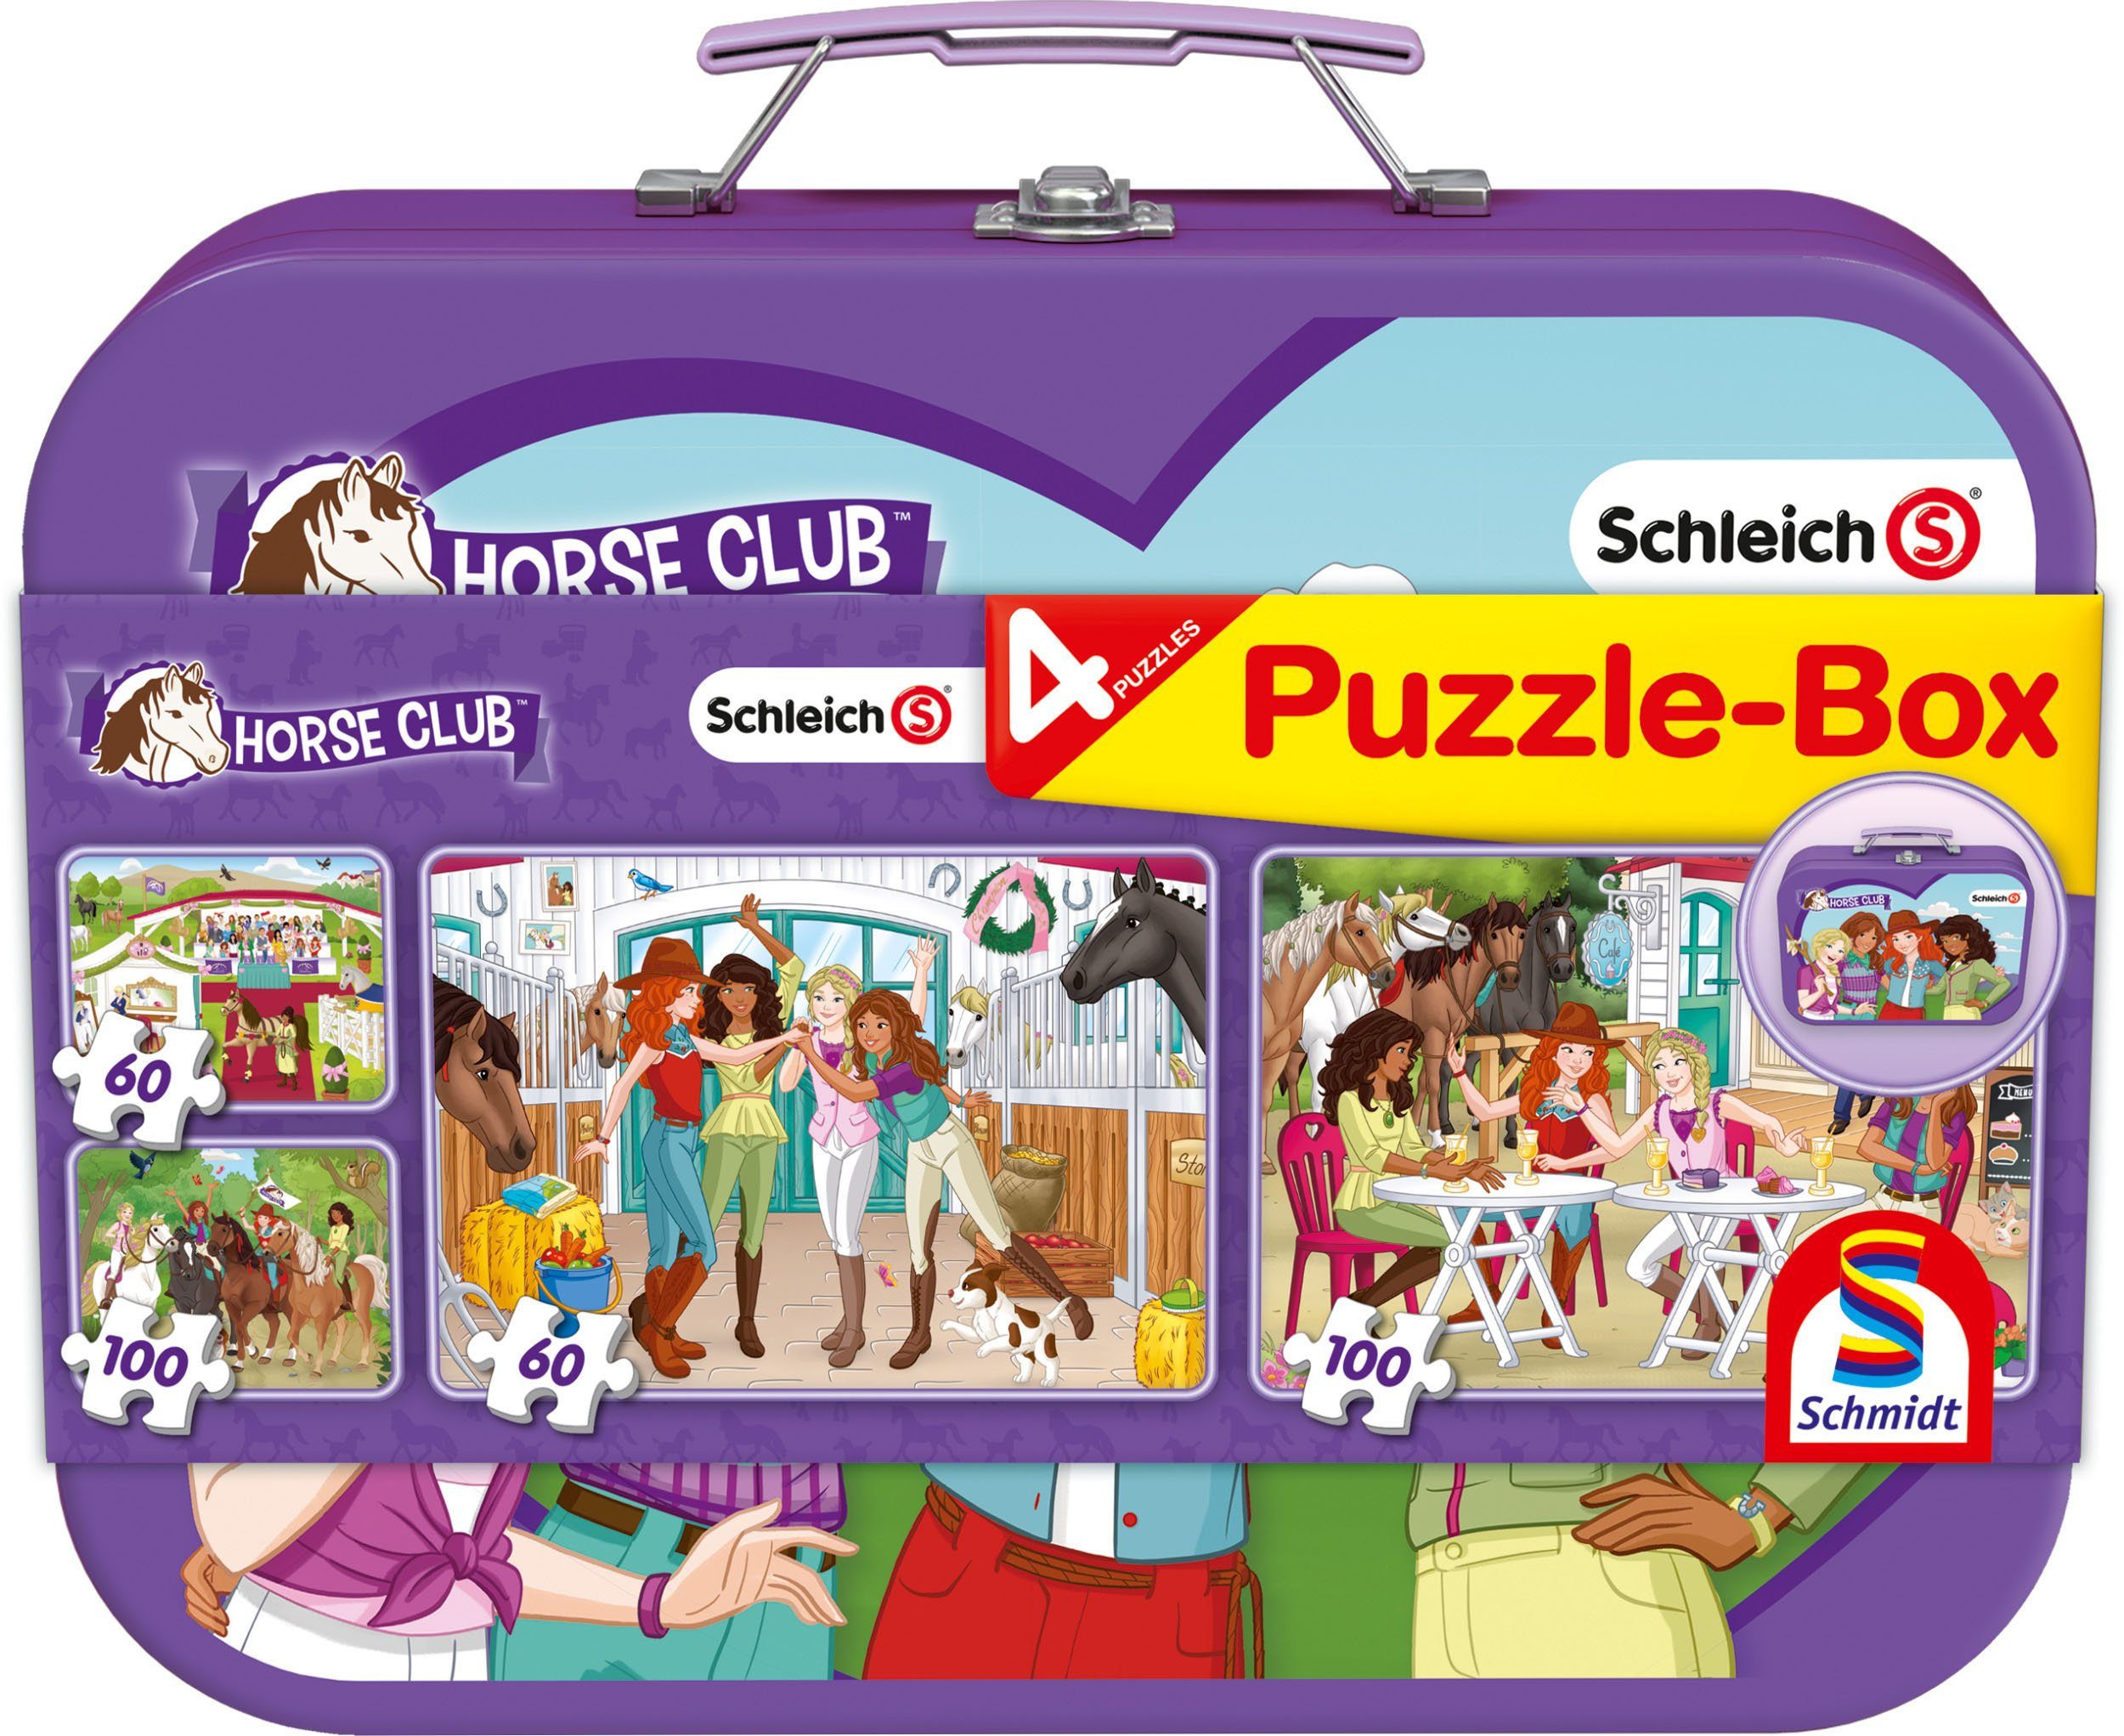 Schmidt Spiele Puzzle »Schleich, Horse Club, Puzzle-Box, 2x60, 2x100  Teile«, 320 Puzzleteile, im Metallkoffer online kaufen | OTTO